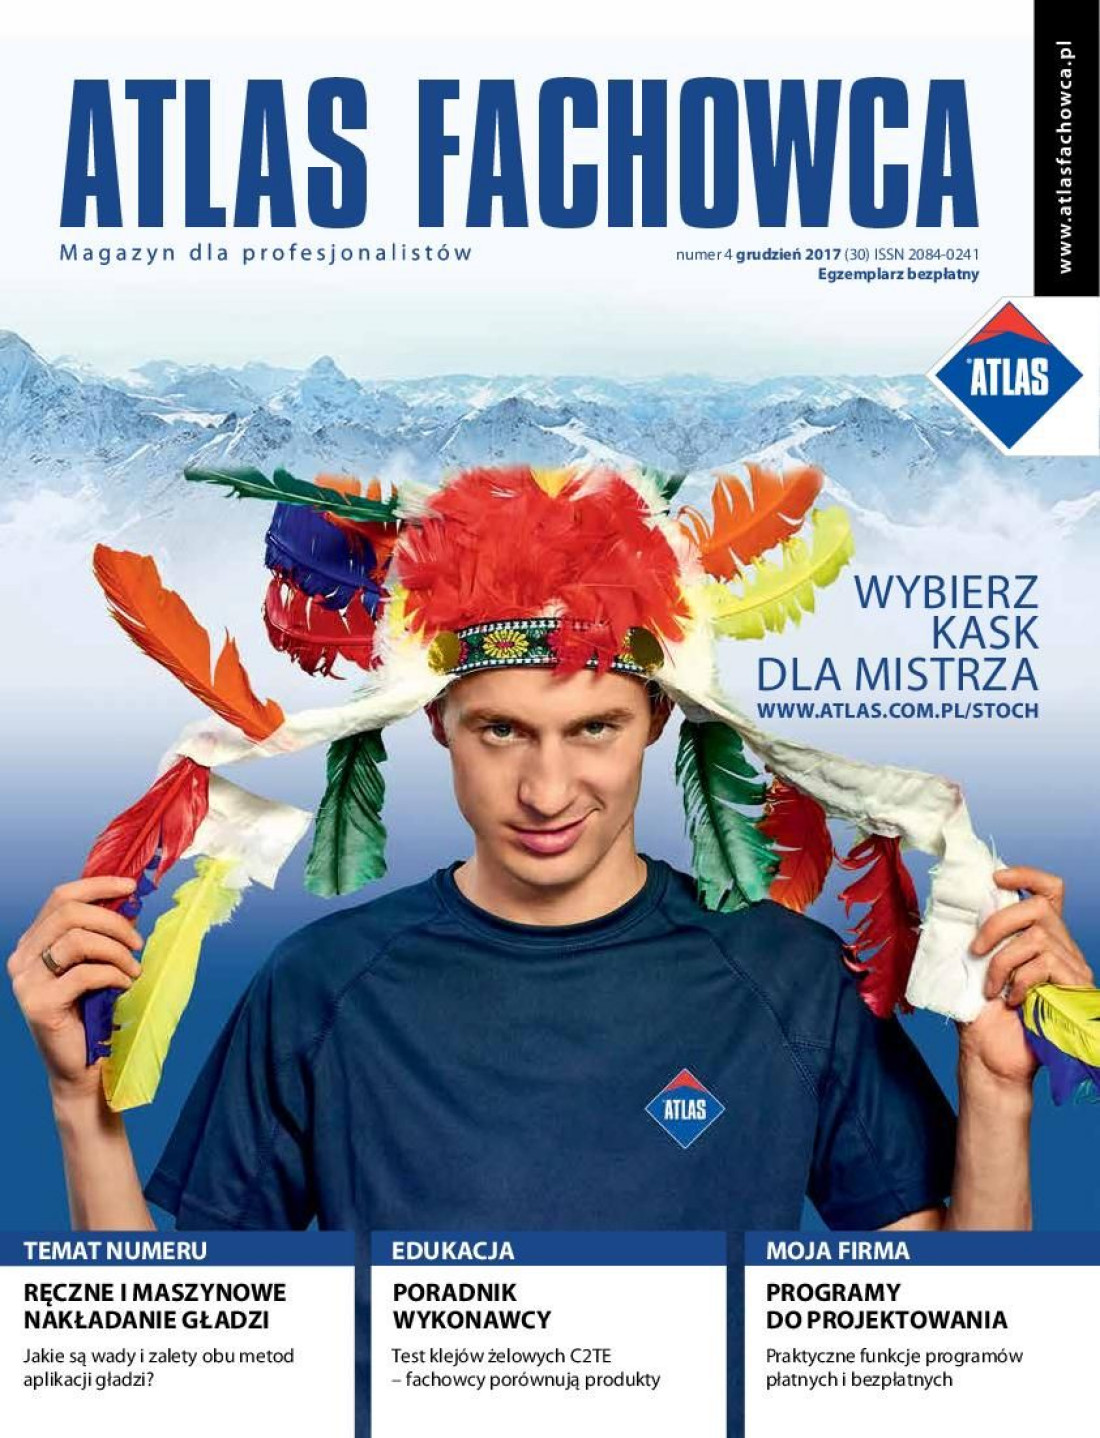 ATLAS: Ukazał się nowy numer magazynu dla fachowców